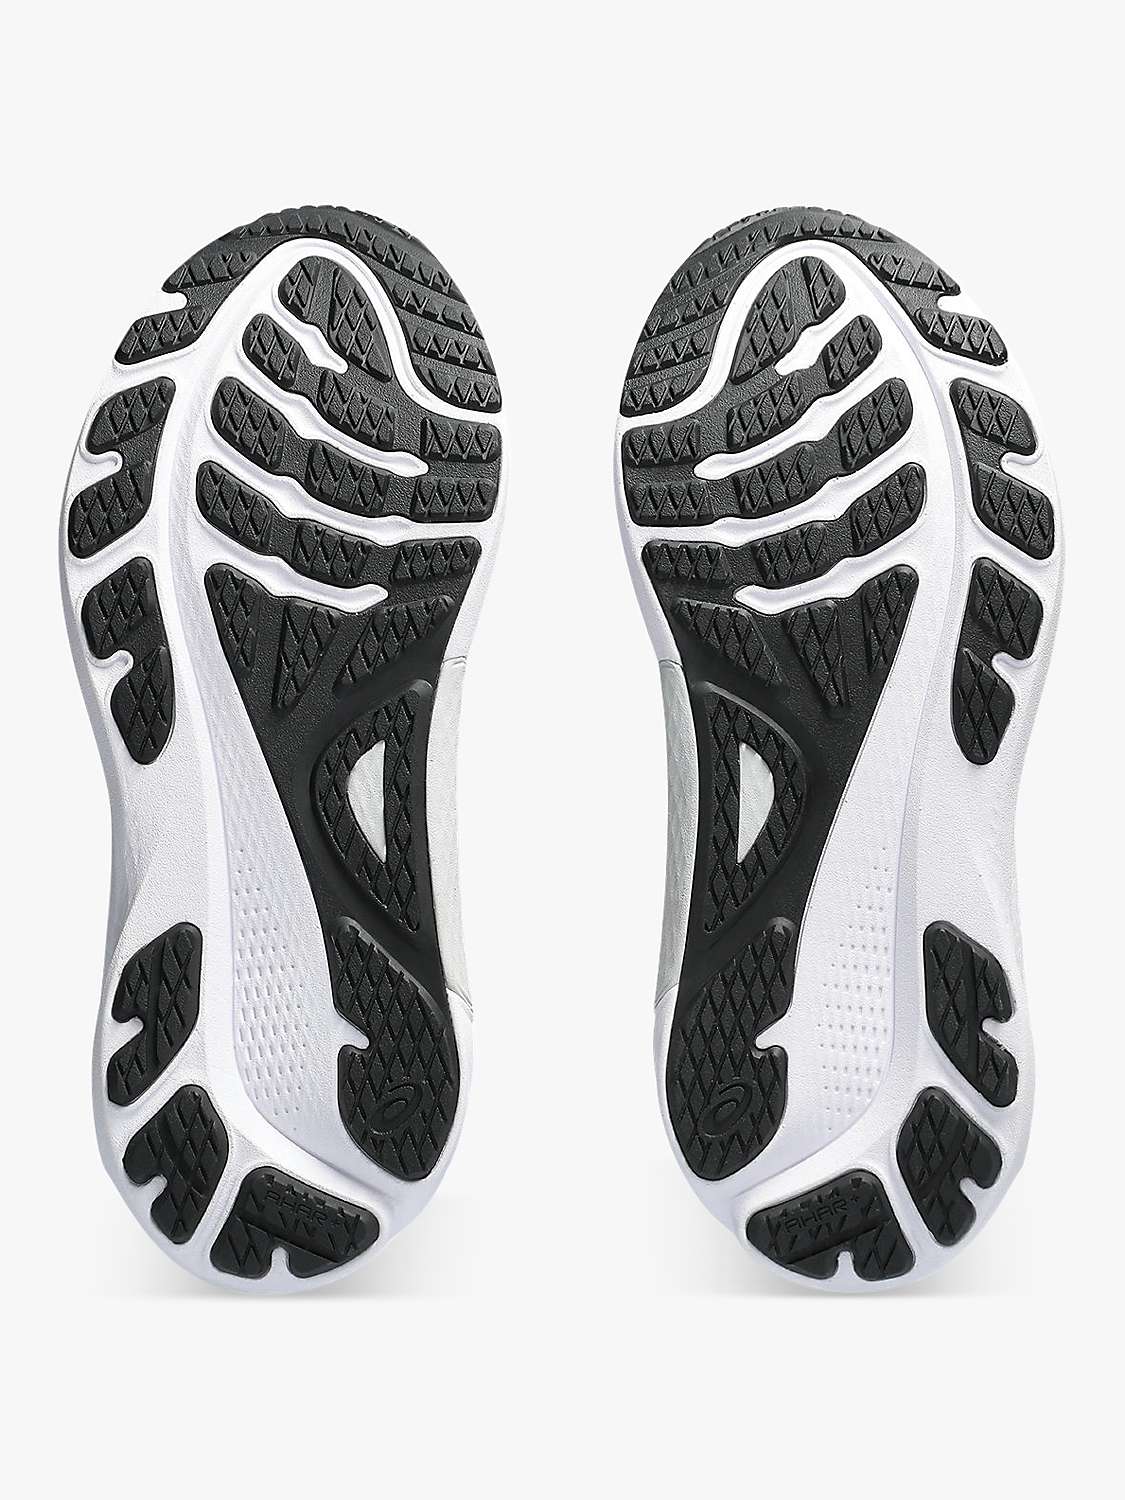 Buy ASICS GEL-KAYANO 30 Men's Running Shoes Online at johnlewis.com